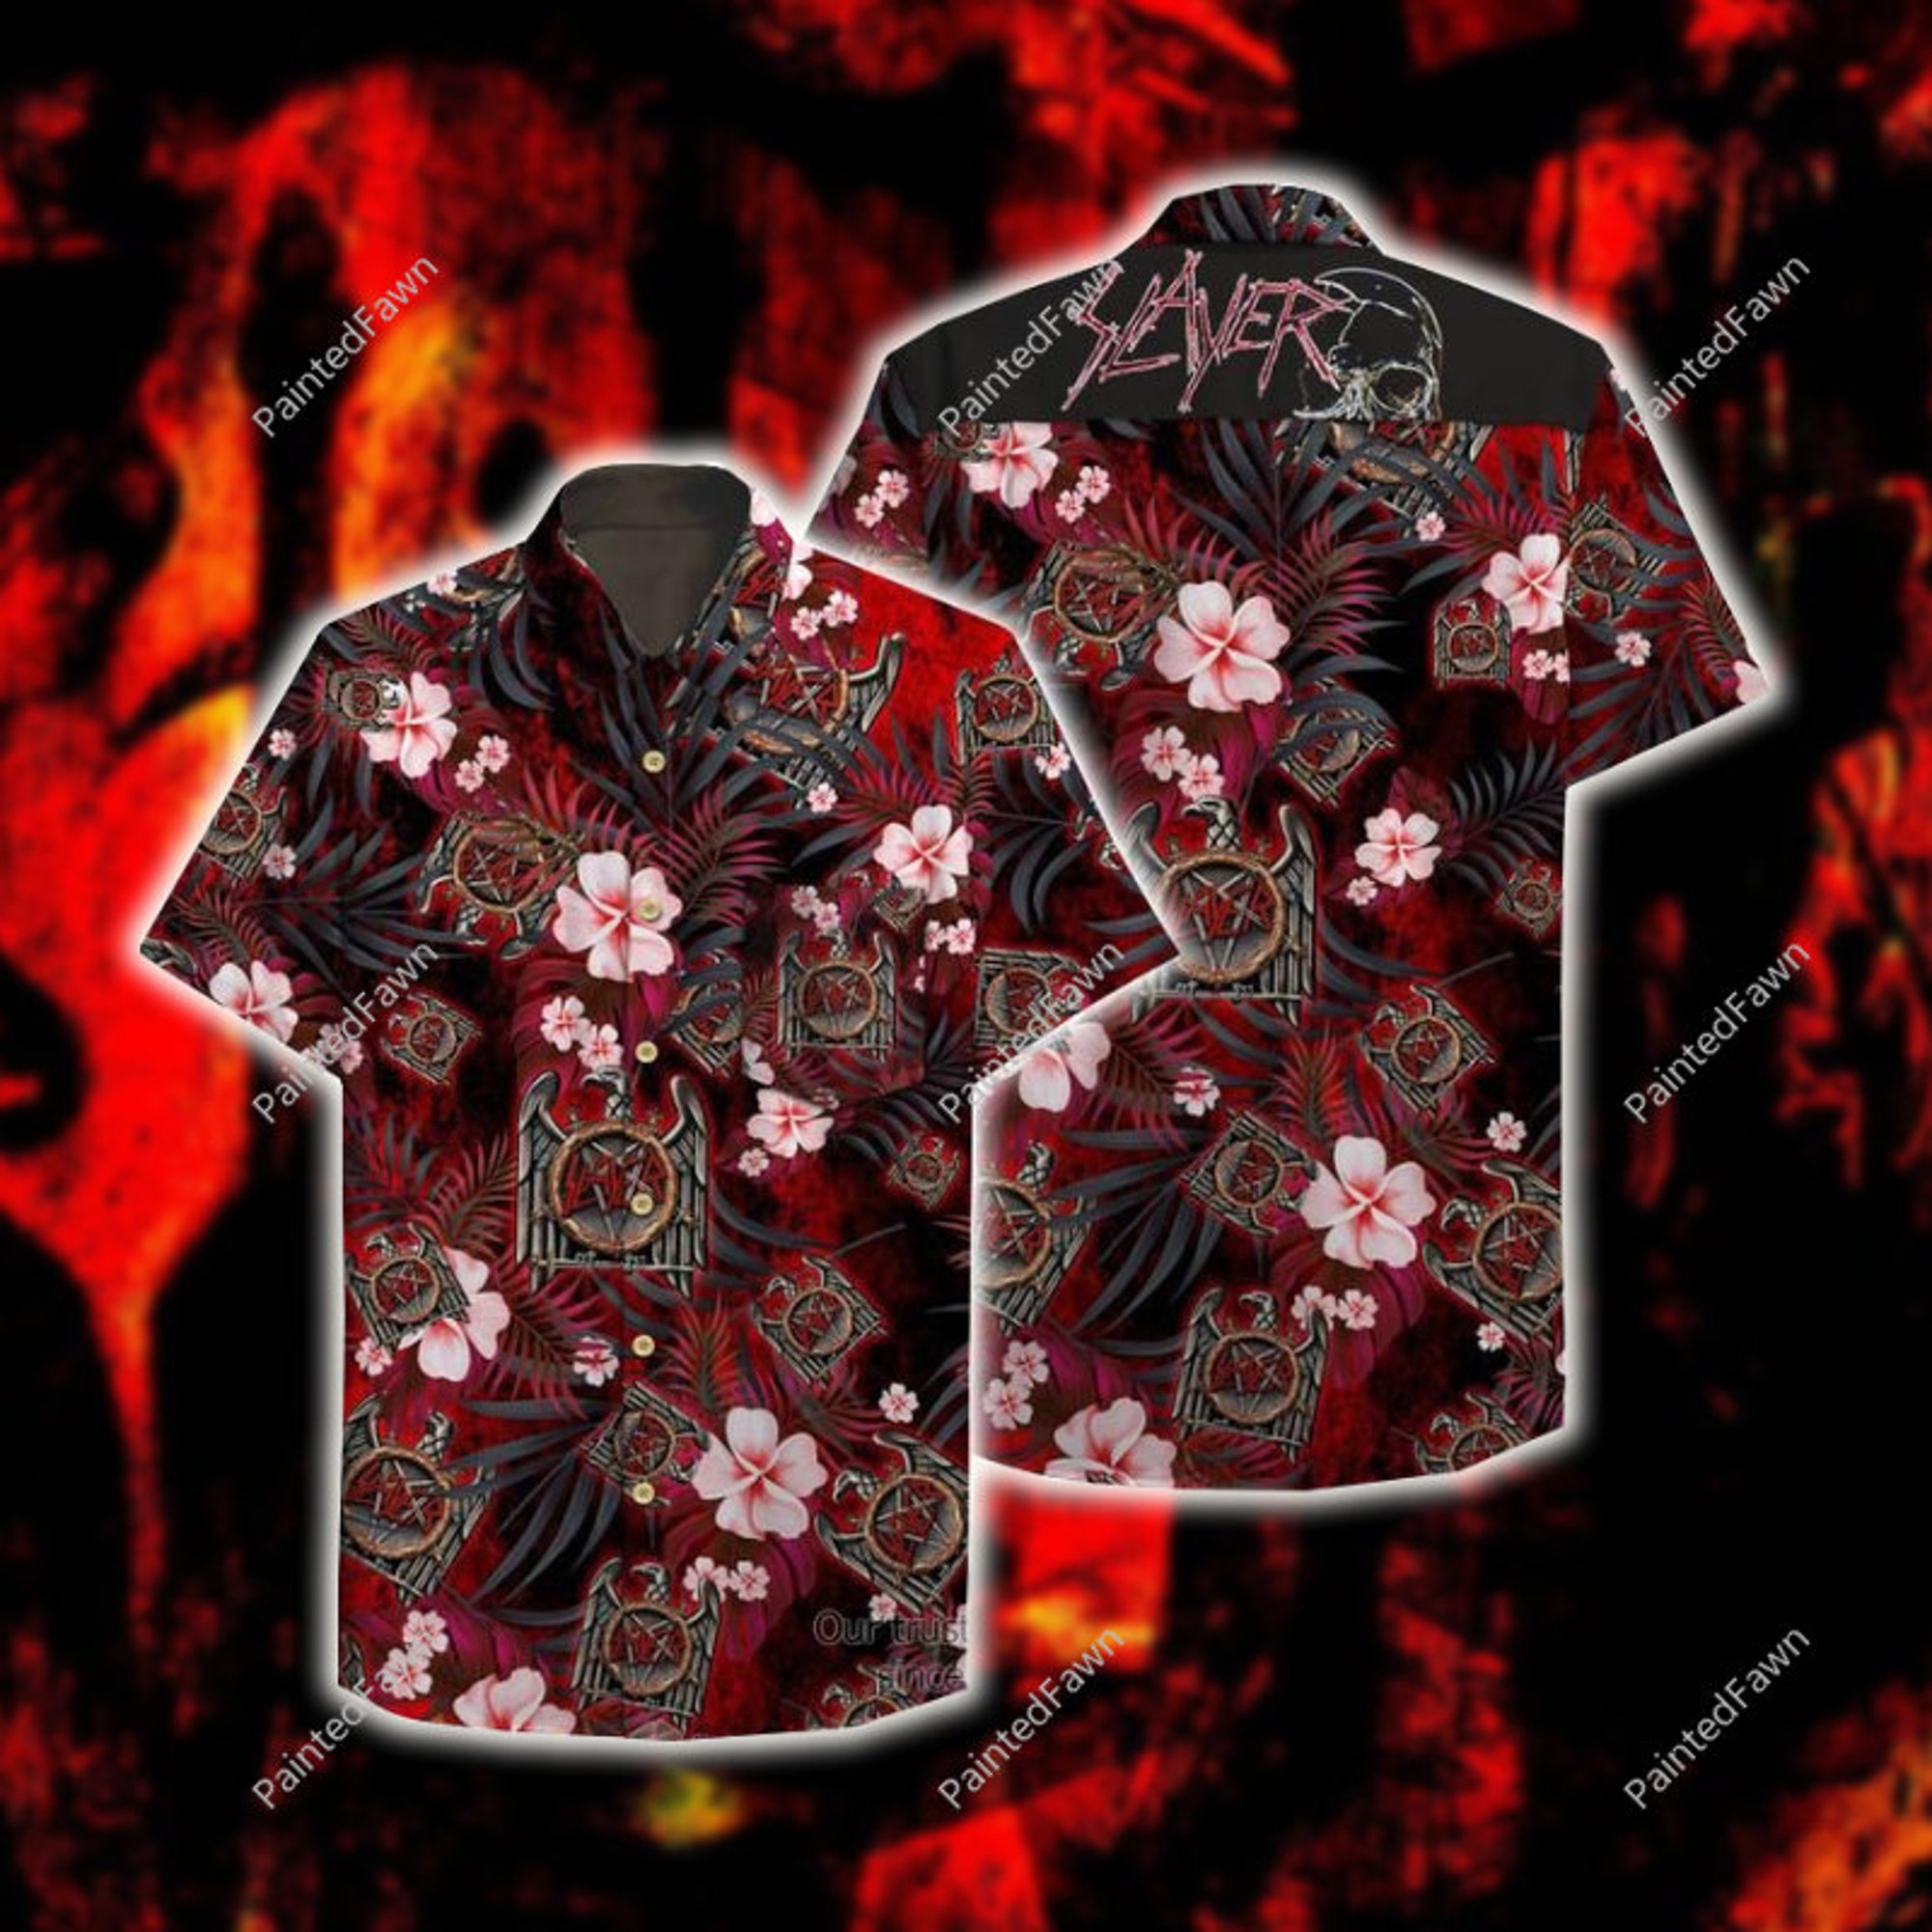 Slayer Hawaiian Shirt, Slayer Band Button Up Shirt